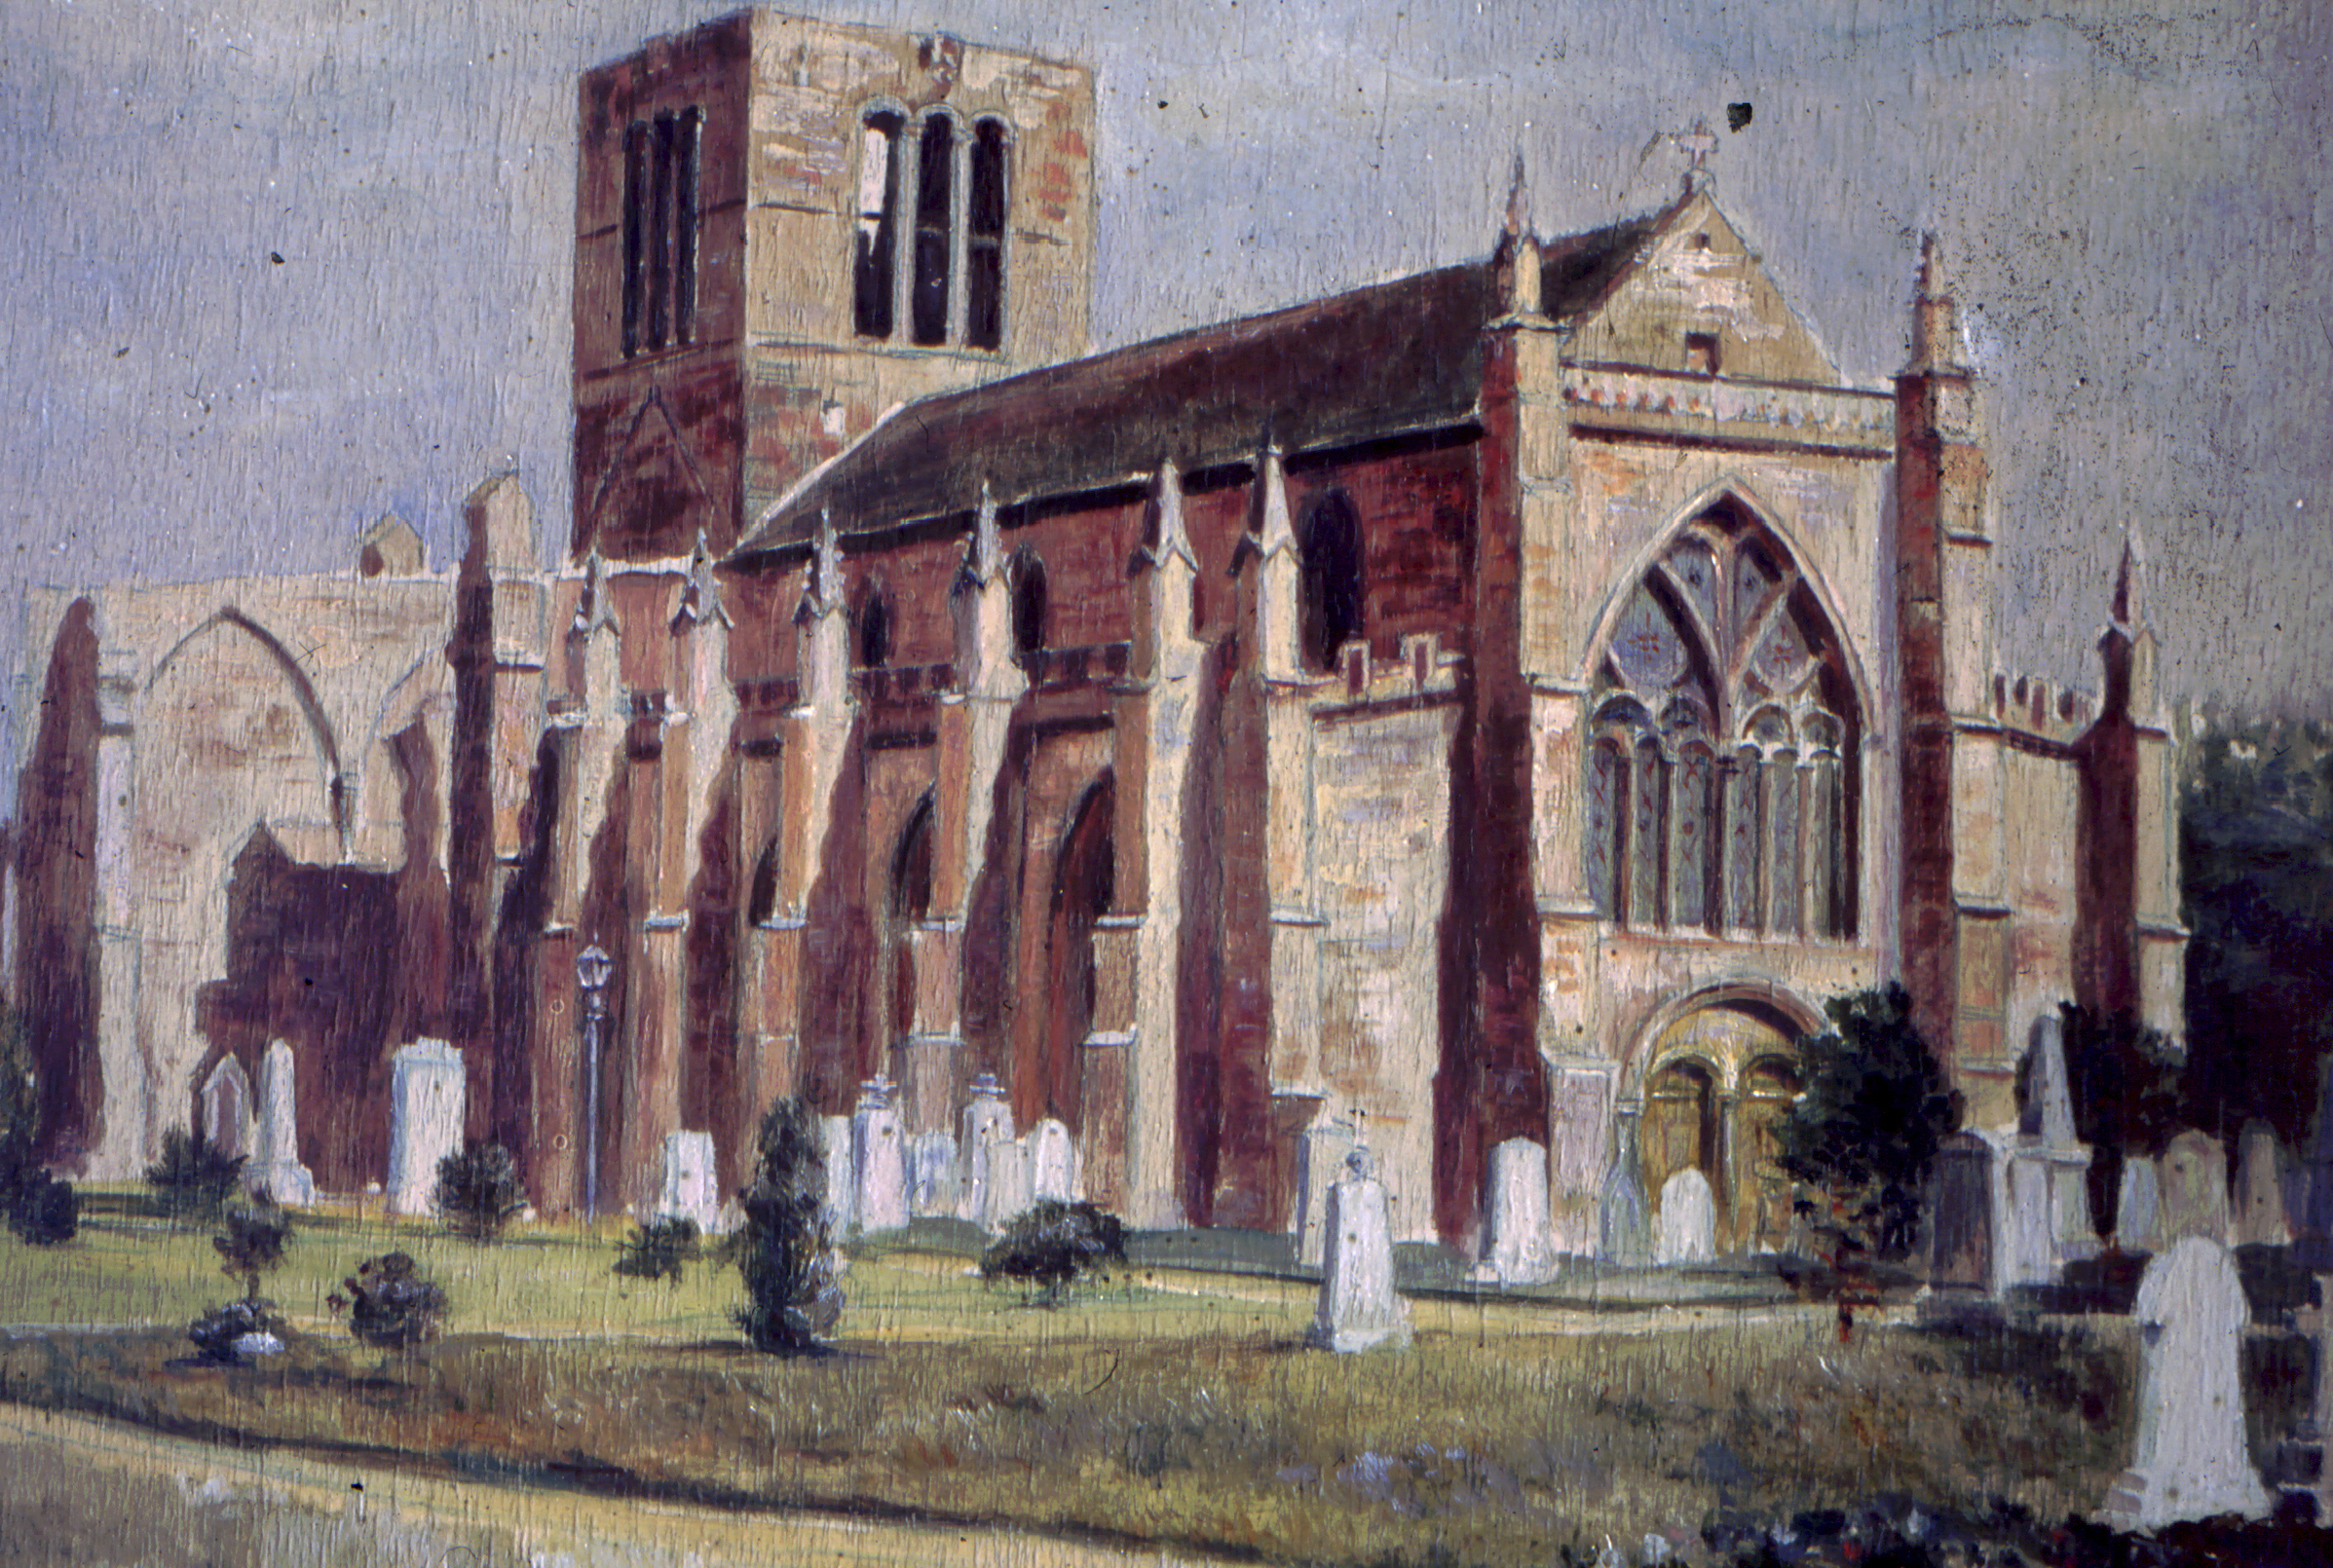 PoW's drawing of St Mary's, Haddington.jpeg